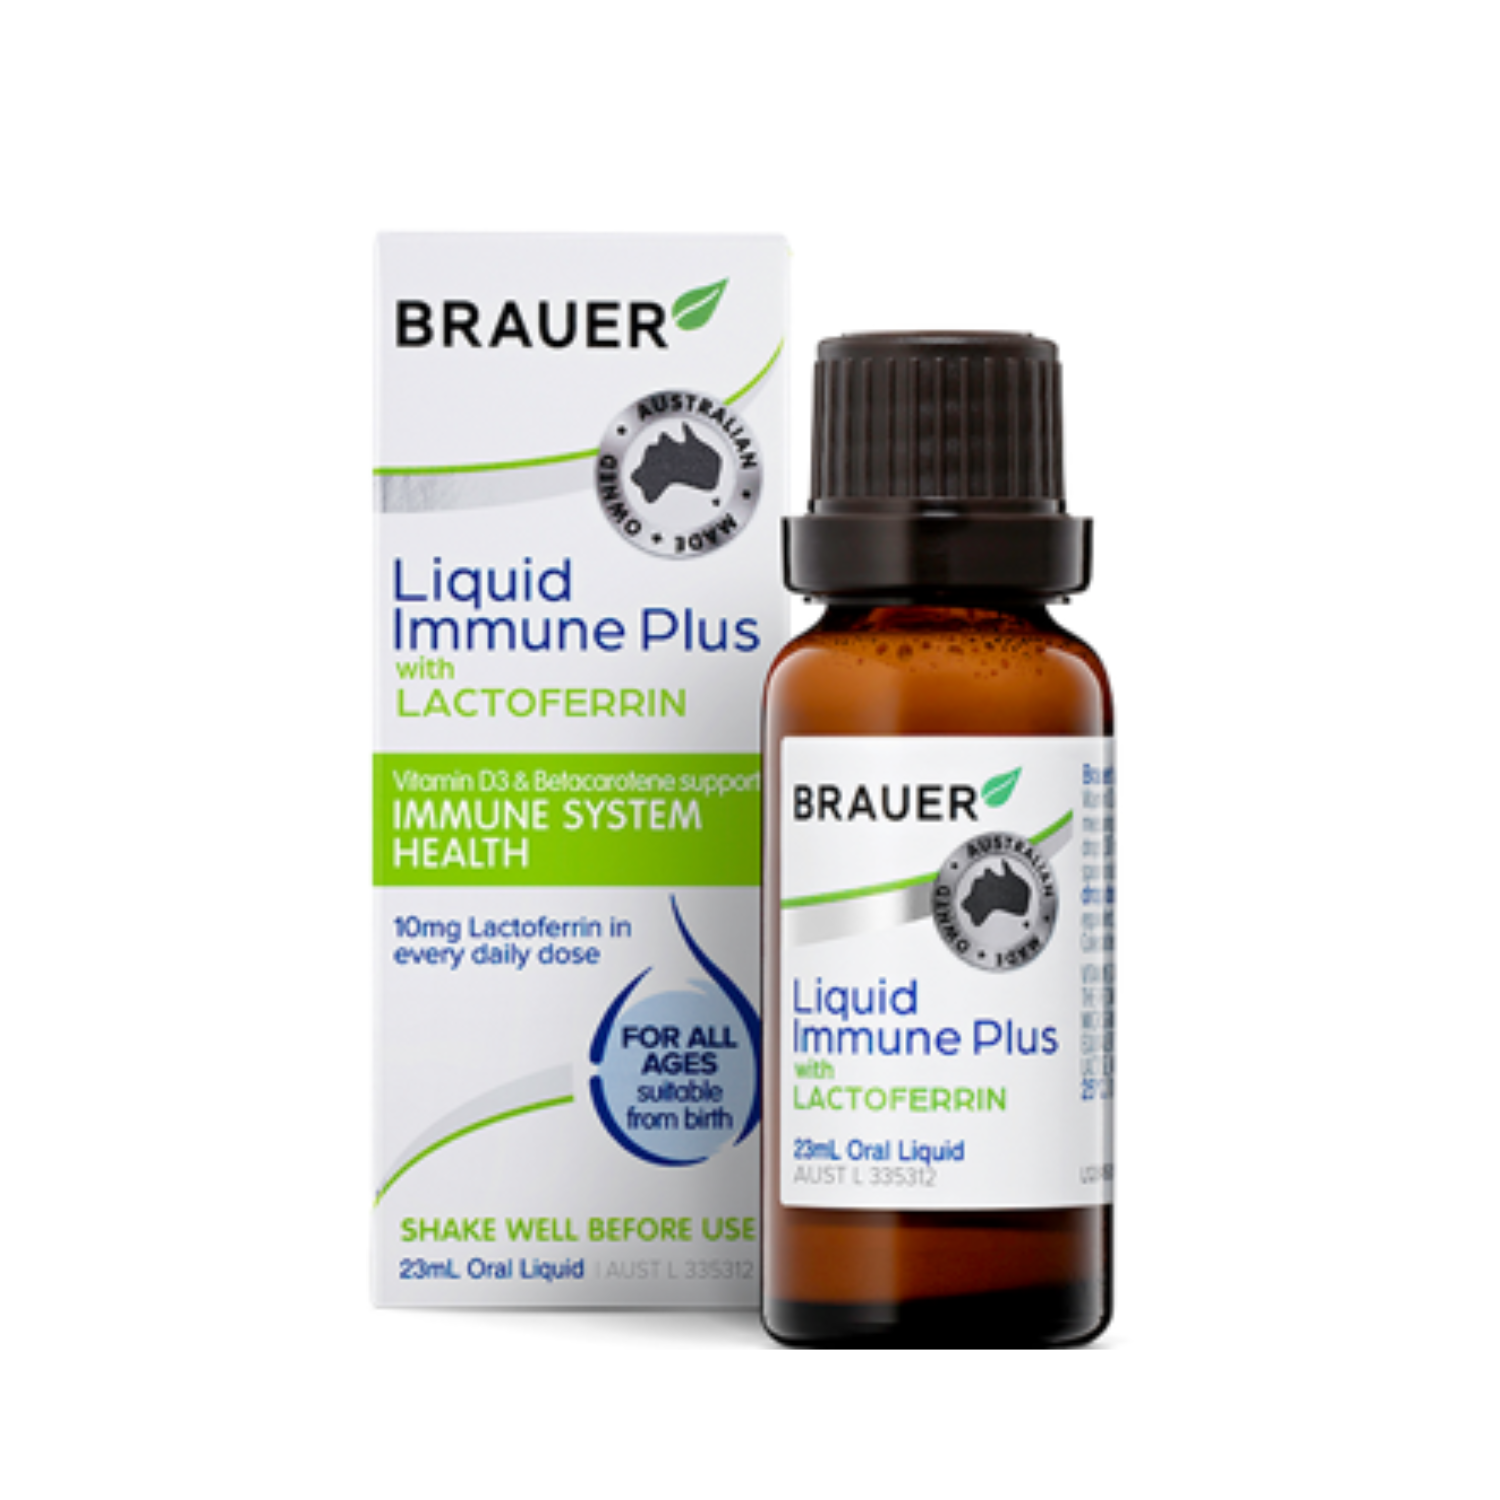 Brauer Liquid Immune Plus with Lactoferrin, 23ml.